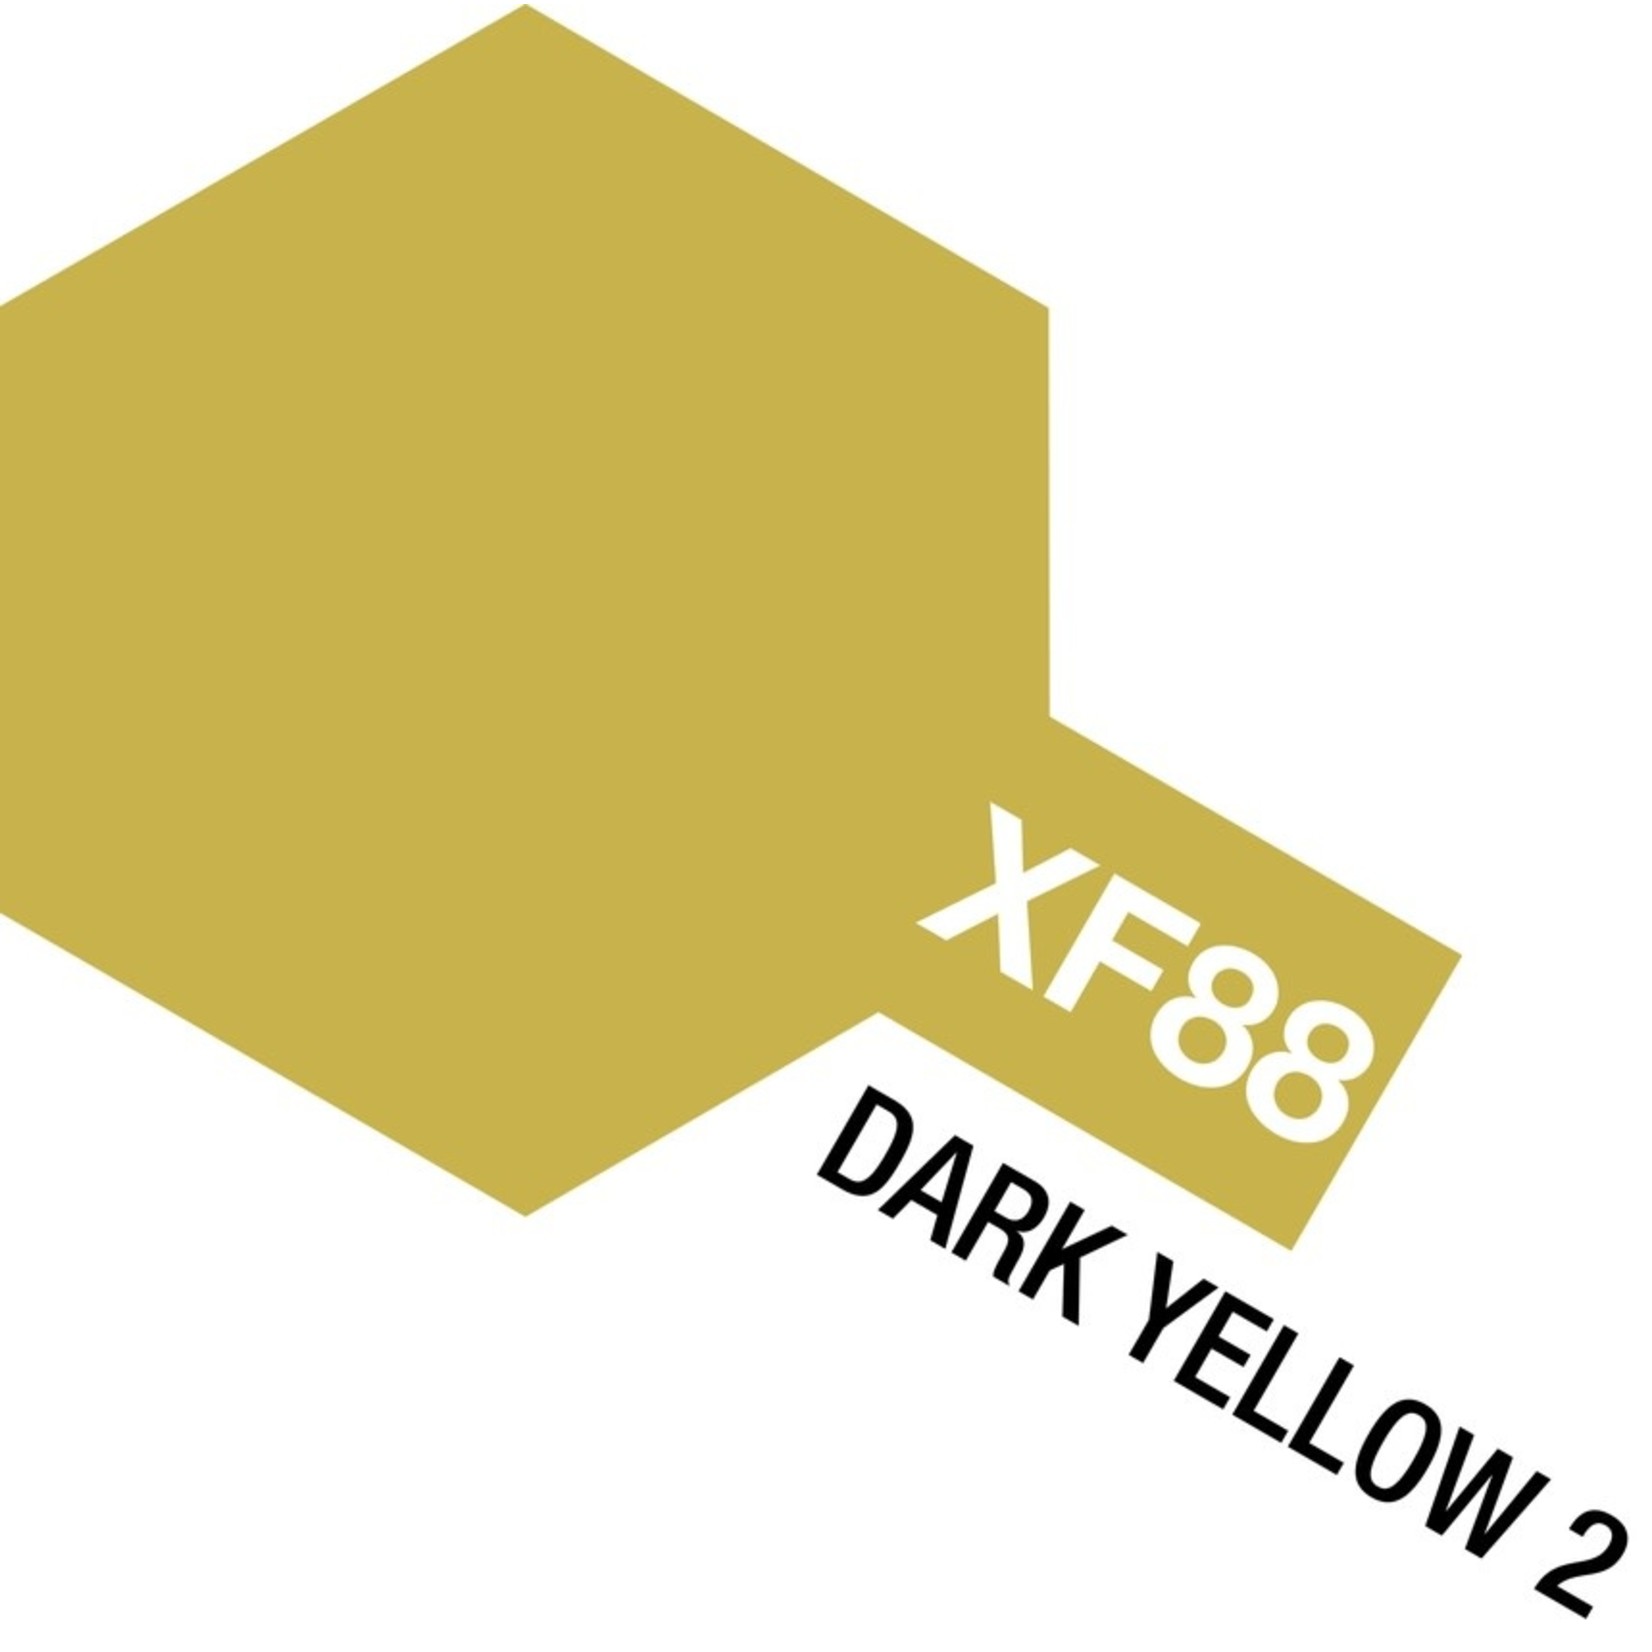 Tamiya Tamiya XF-88 Dark Yellow 2 10ml